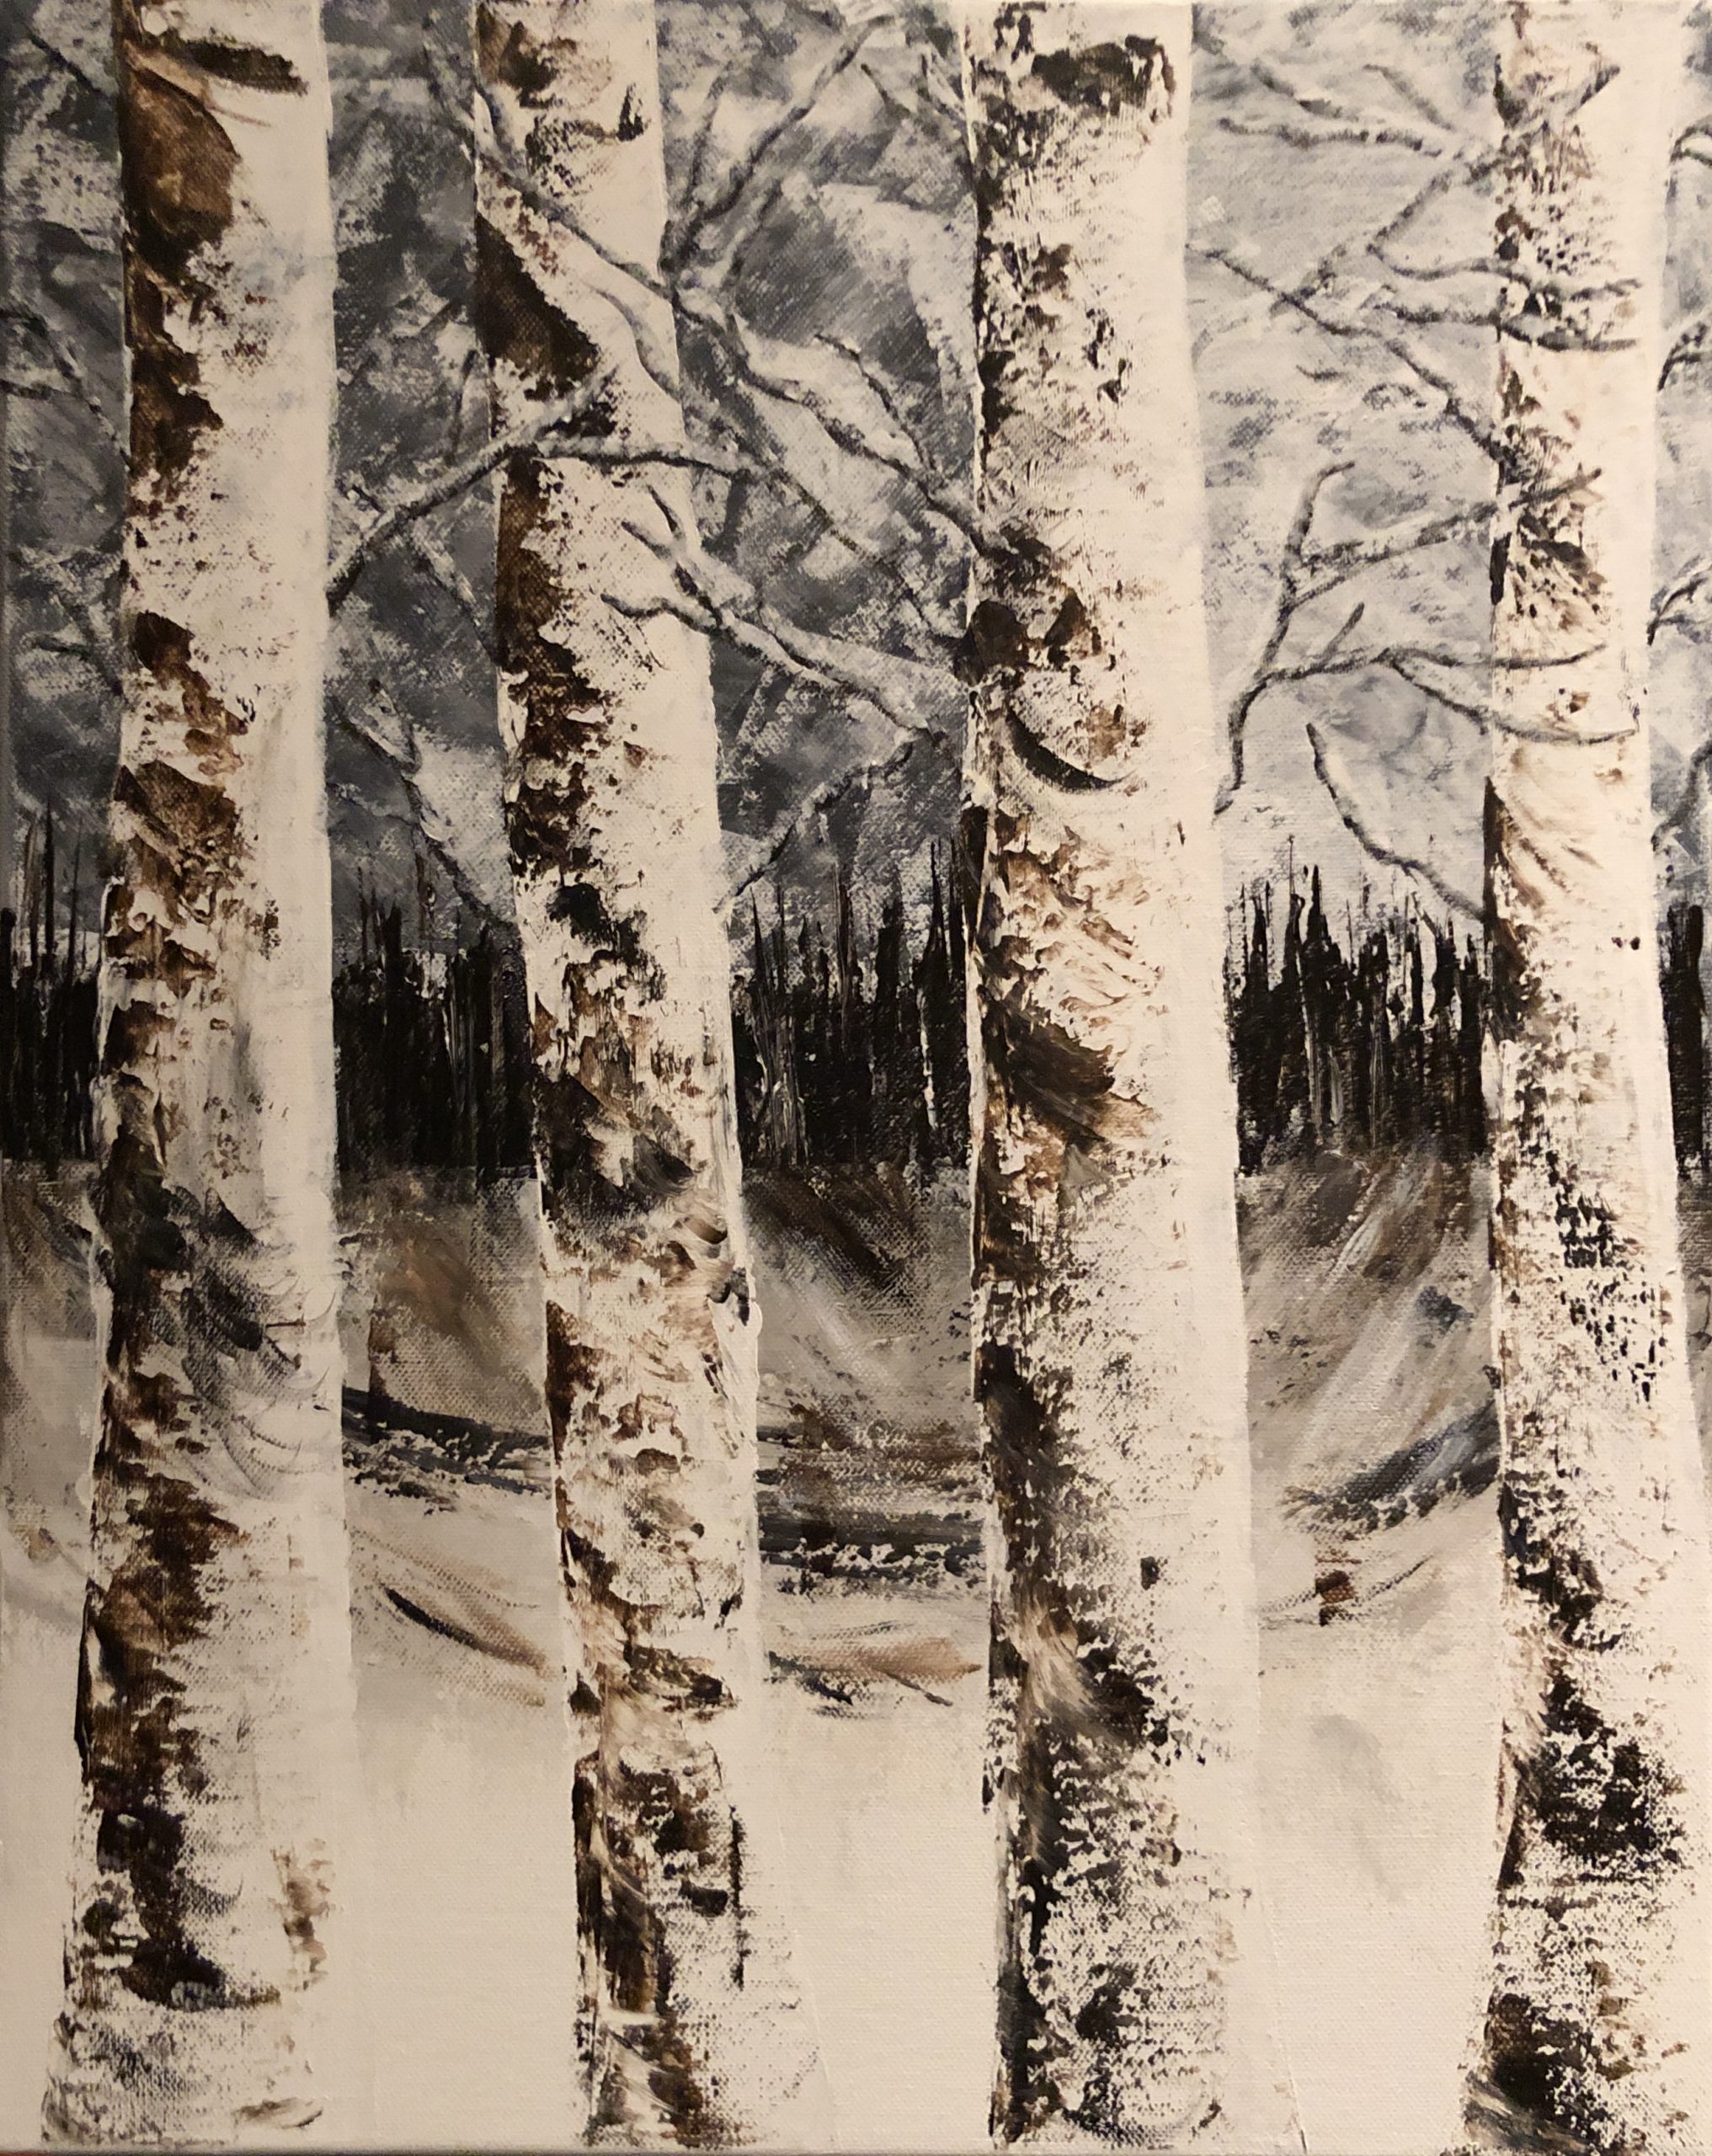 La forêt à l'automne, Kate Art Galerie